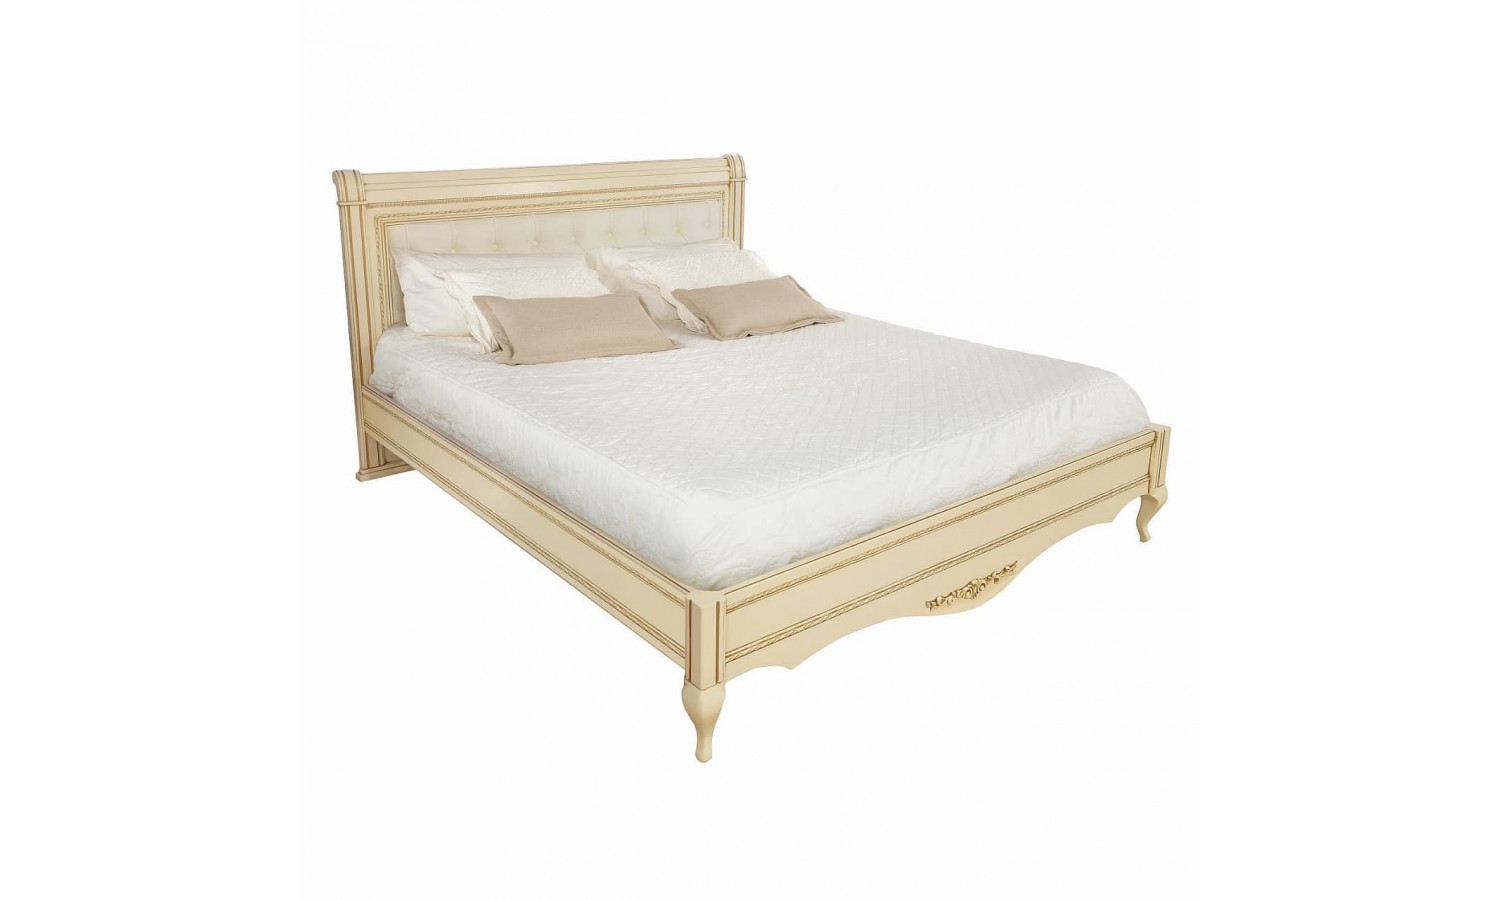 Кровать 160x200 с мягкой спинкой Неаполь, Ваниль/Патина Золото без структуры дерева